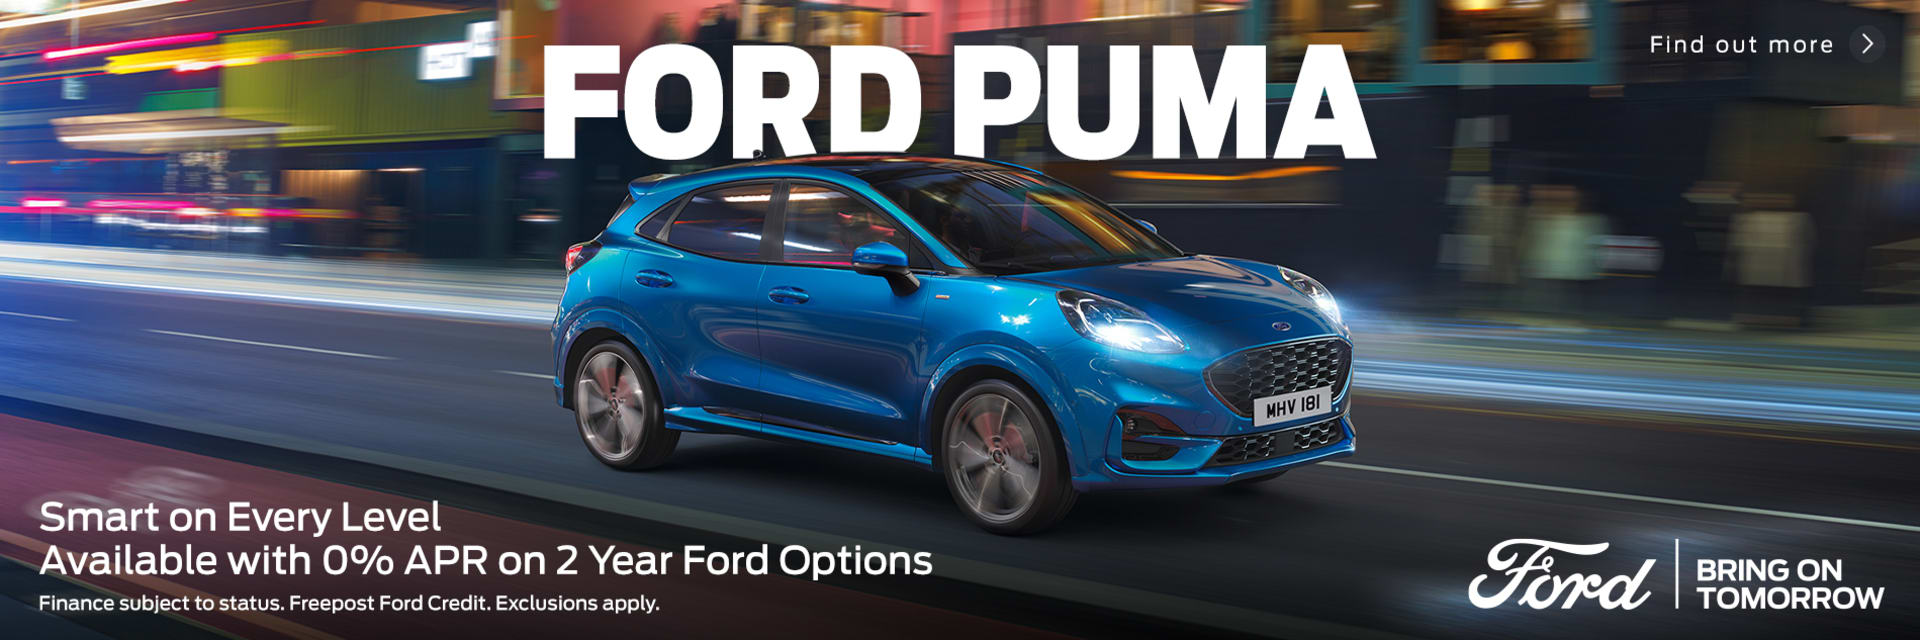 Ford Puma 0% APR on 2 Year Ford Options